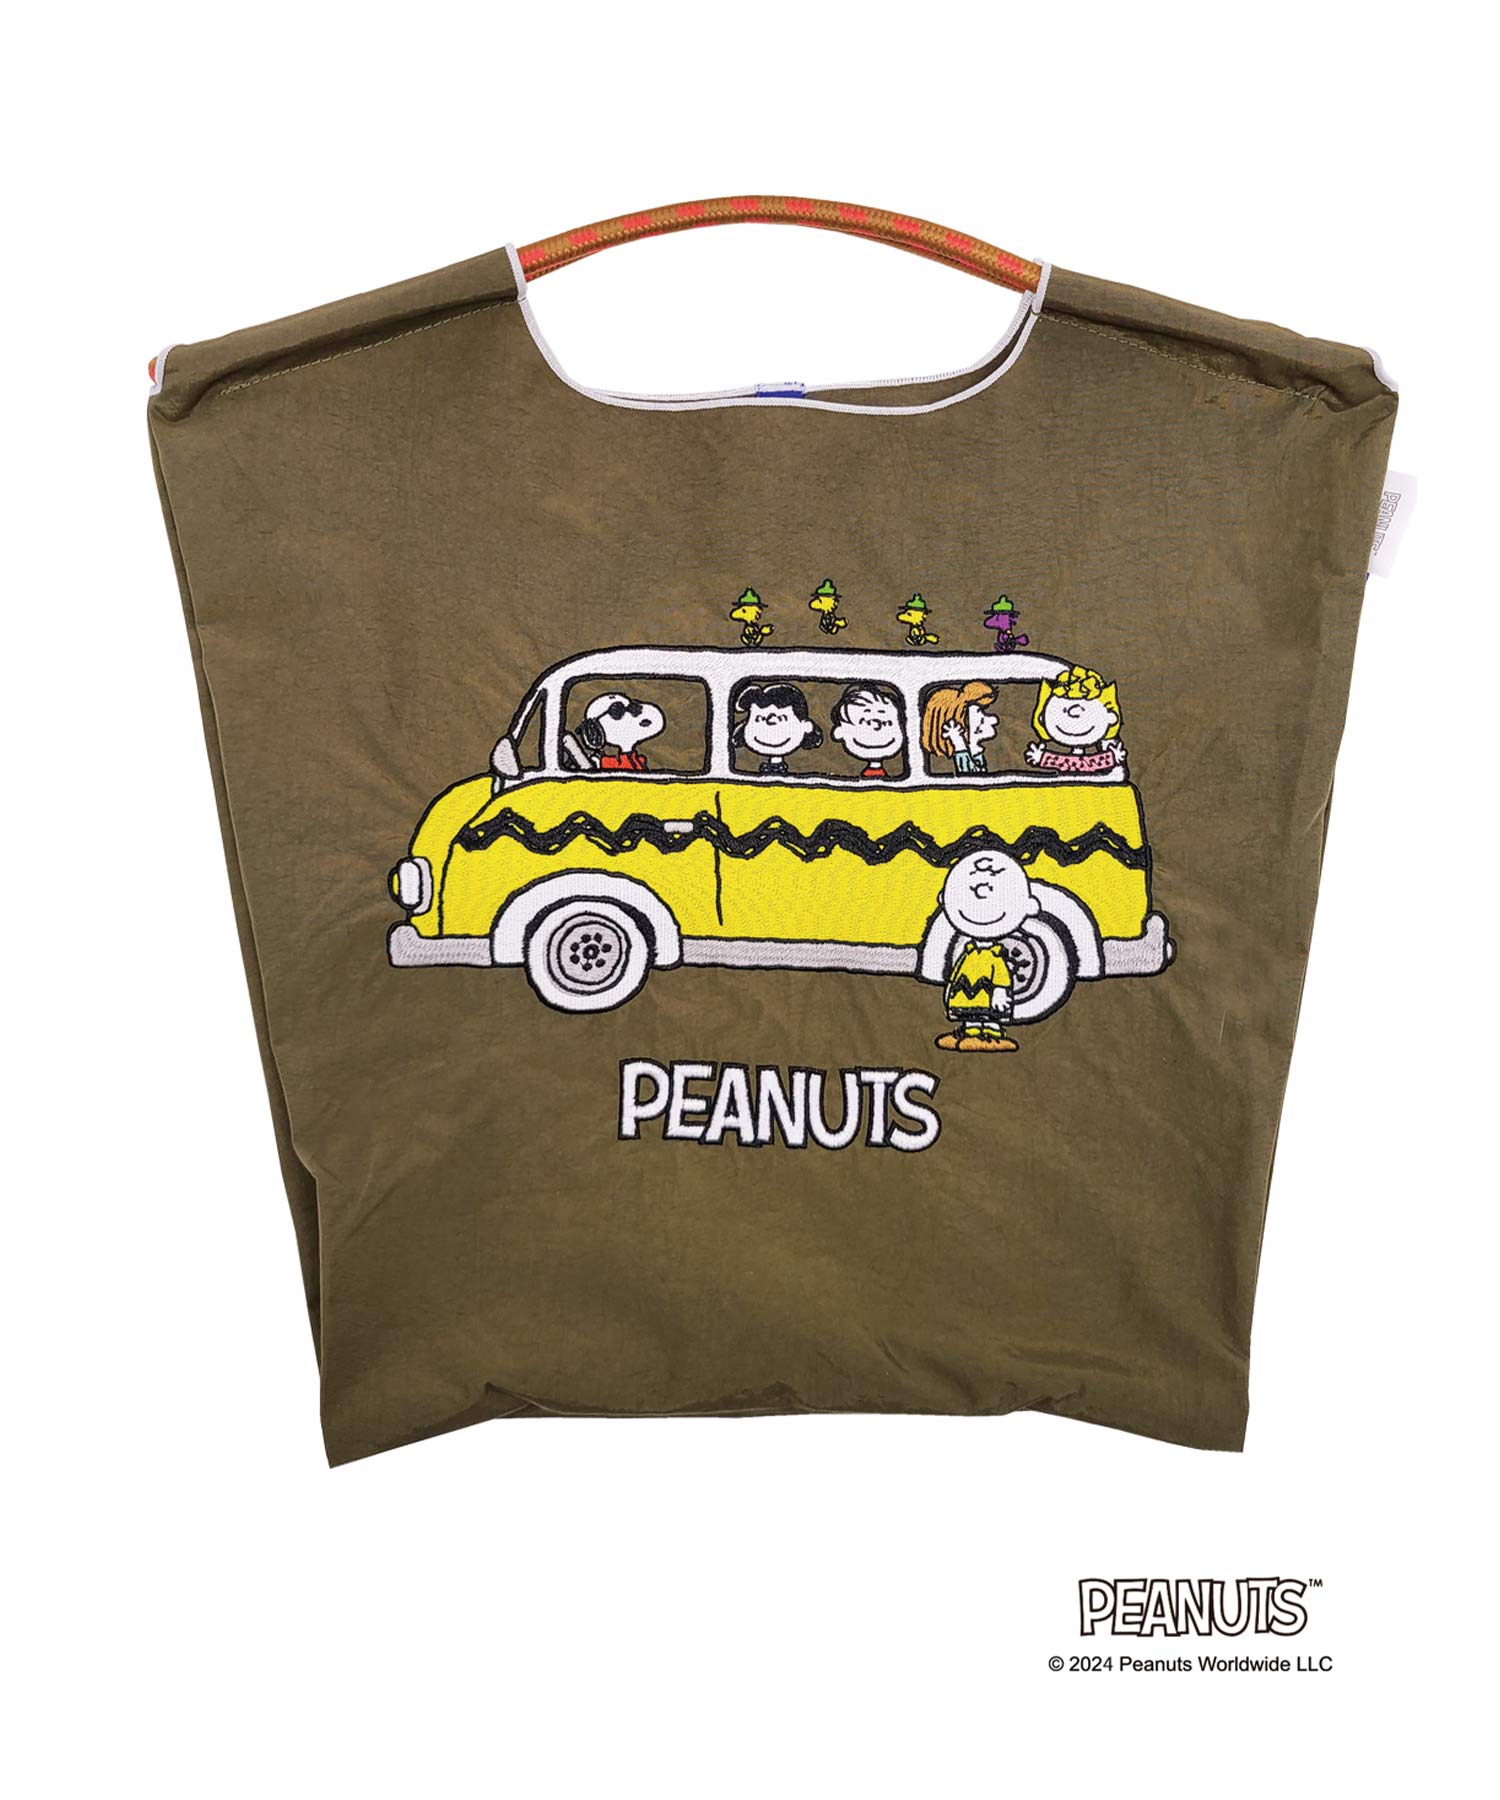 楽天市場】正規品 [Ball&Chain×Peanuts]shopping bag-Peanuts-BUS M